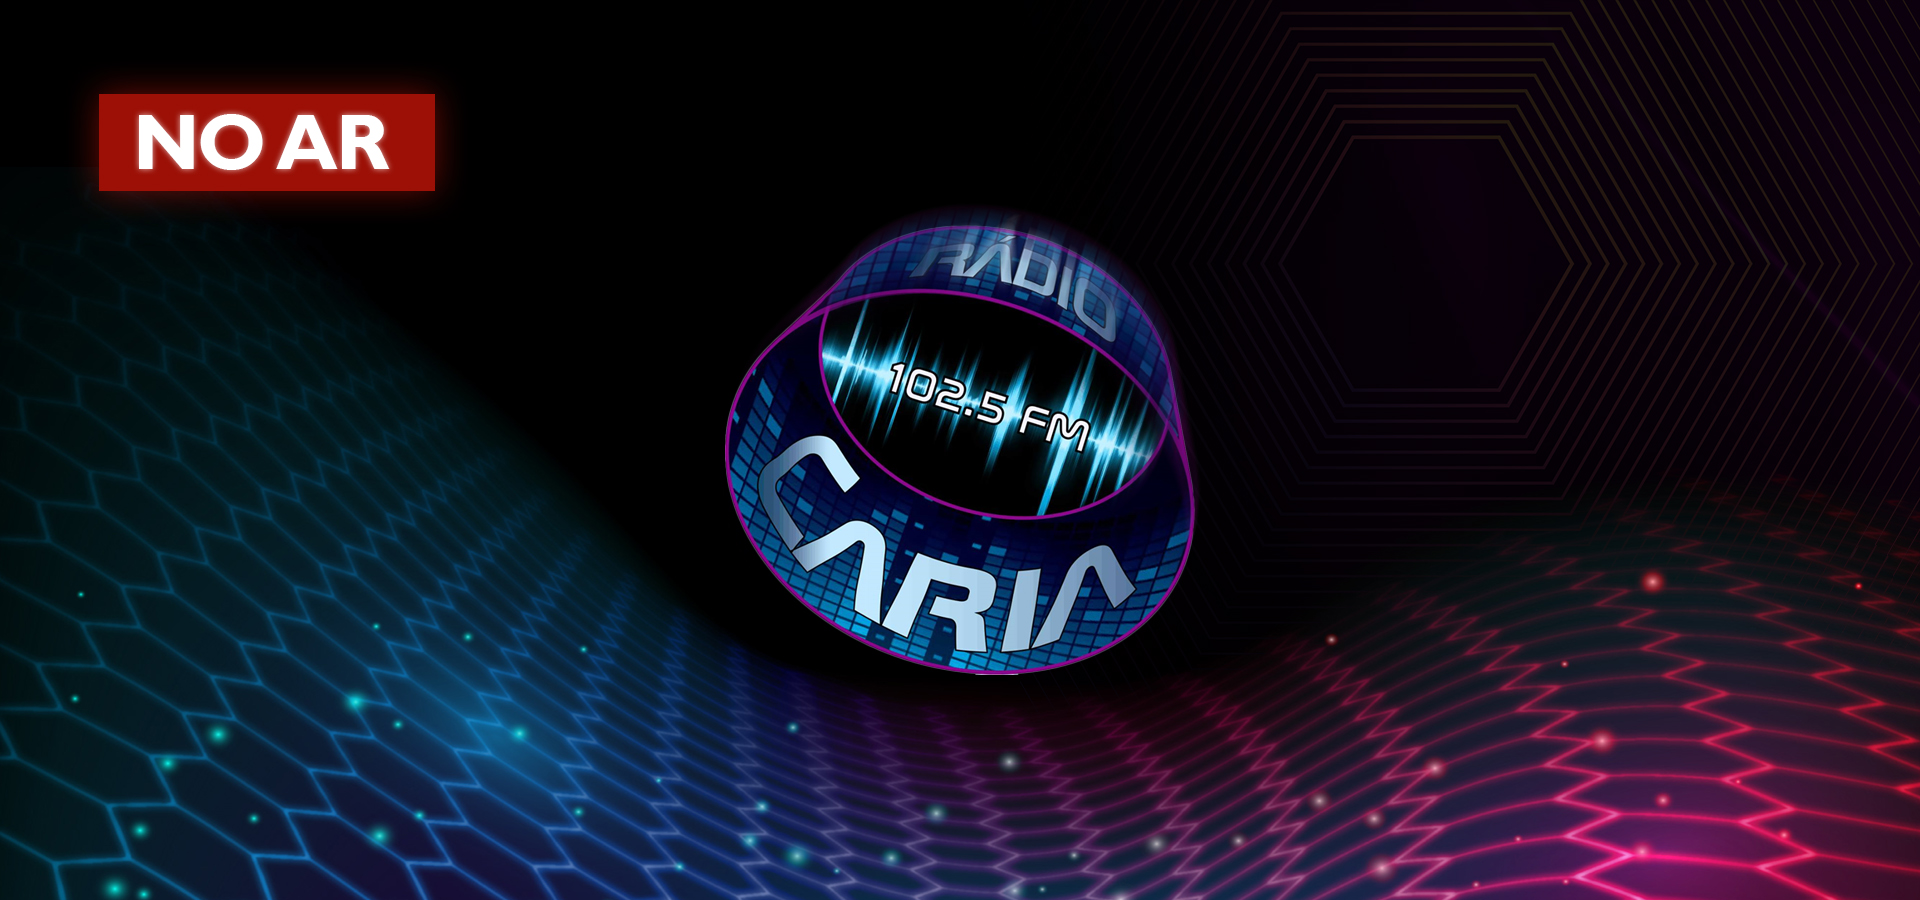 Radio Caria No Ar